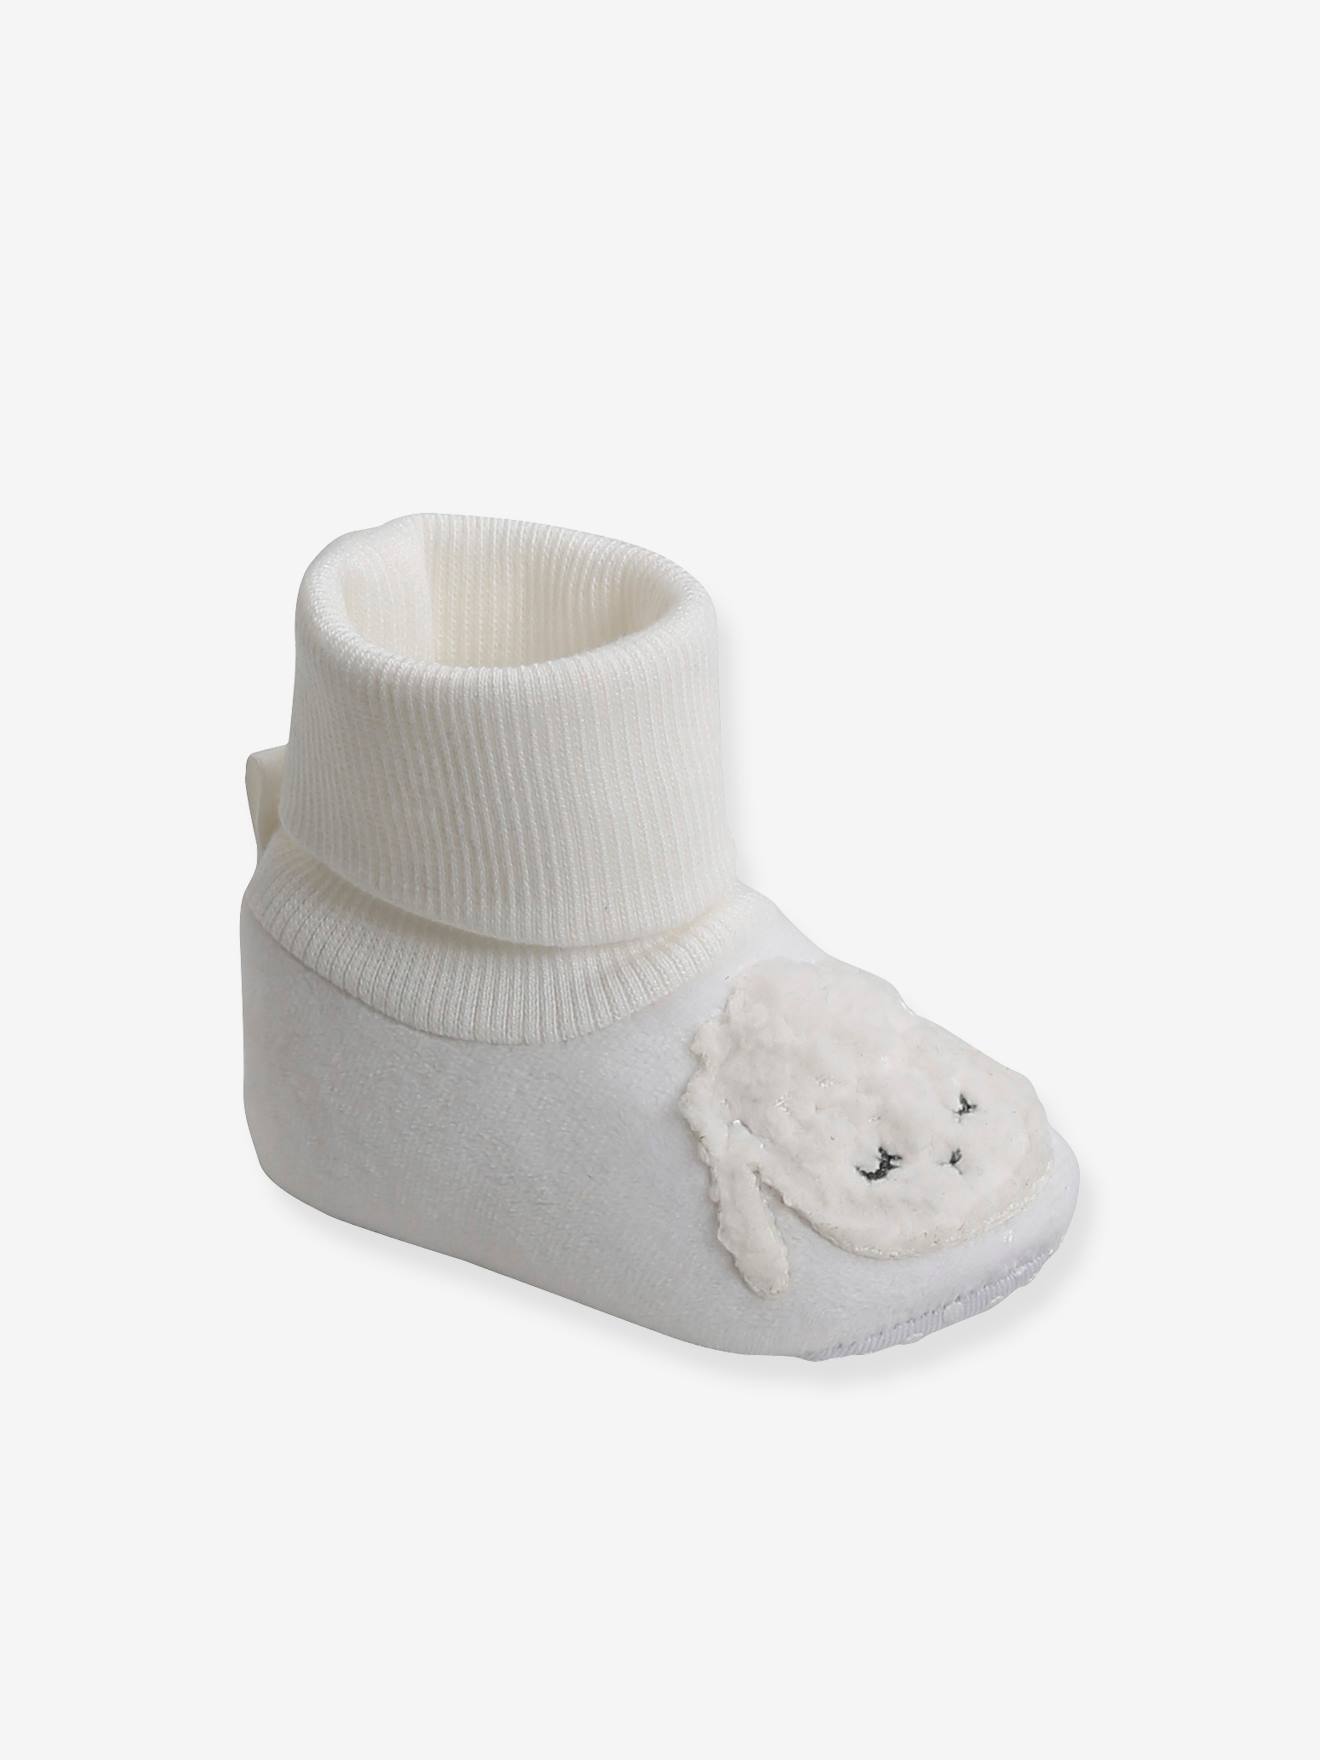 Chaussons de parc chaussettes bébé ( 0-6 mois)